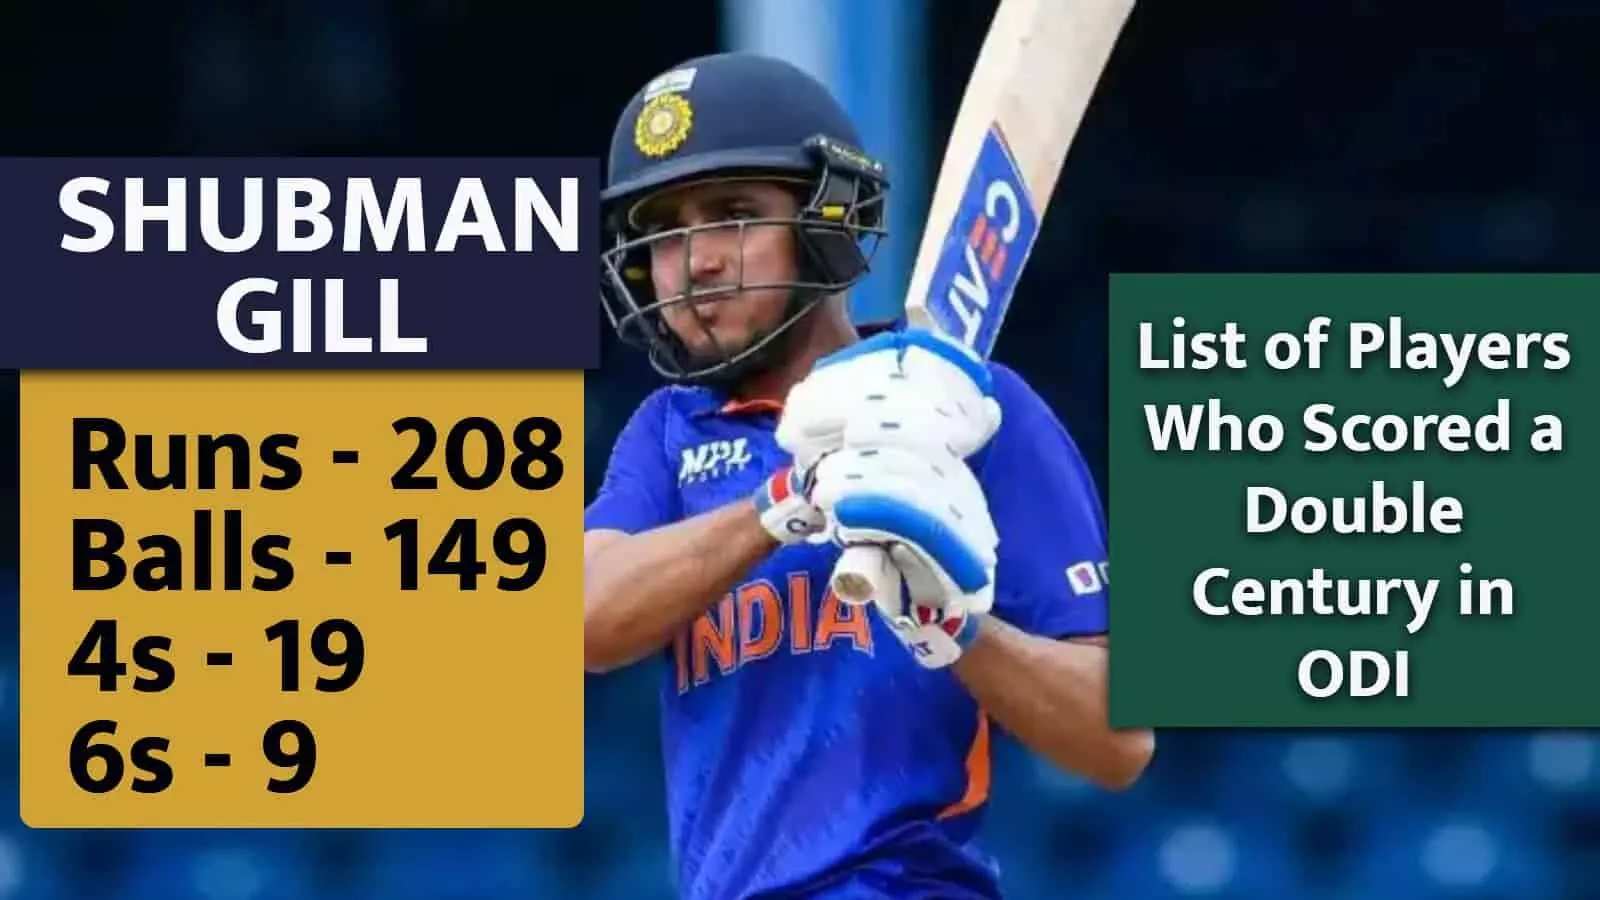 न्यूजीलैंड के खिलाफ Shubman Gill का दोहरा शतक: Double Century लगाने वाले दुनिया के 8वें और भारत के 5वे खिलाड़ी बनें शुभमन गिल, देखें दोहरा शतक लगाने वाले प्लेयर्स की लिस्ट...